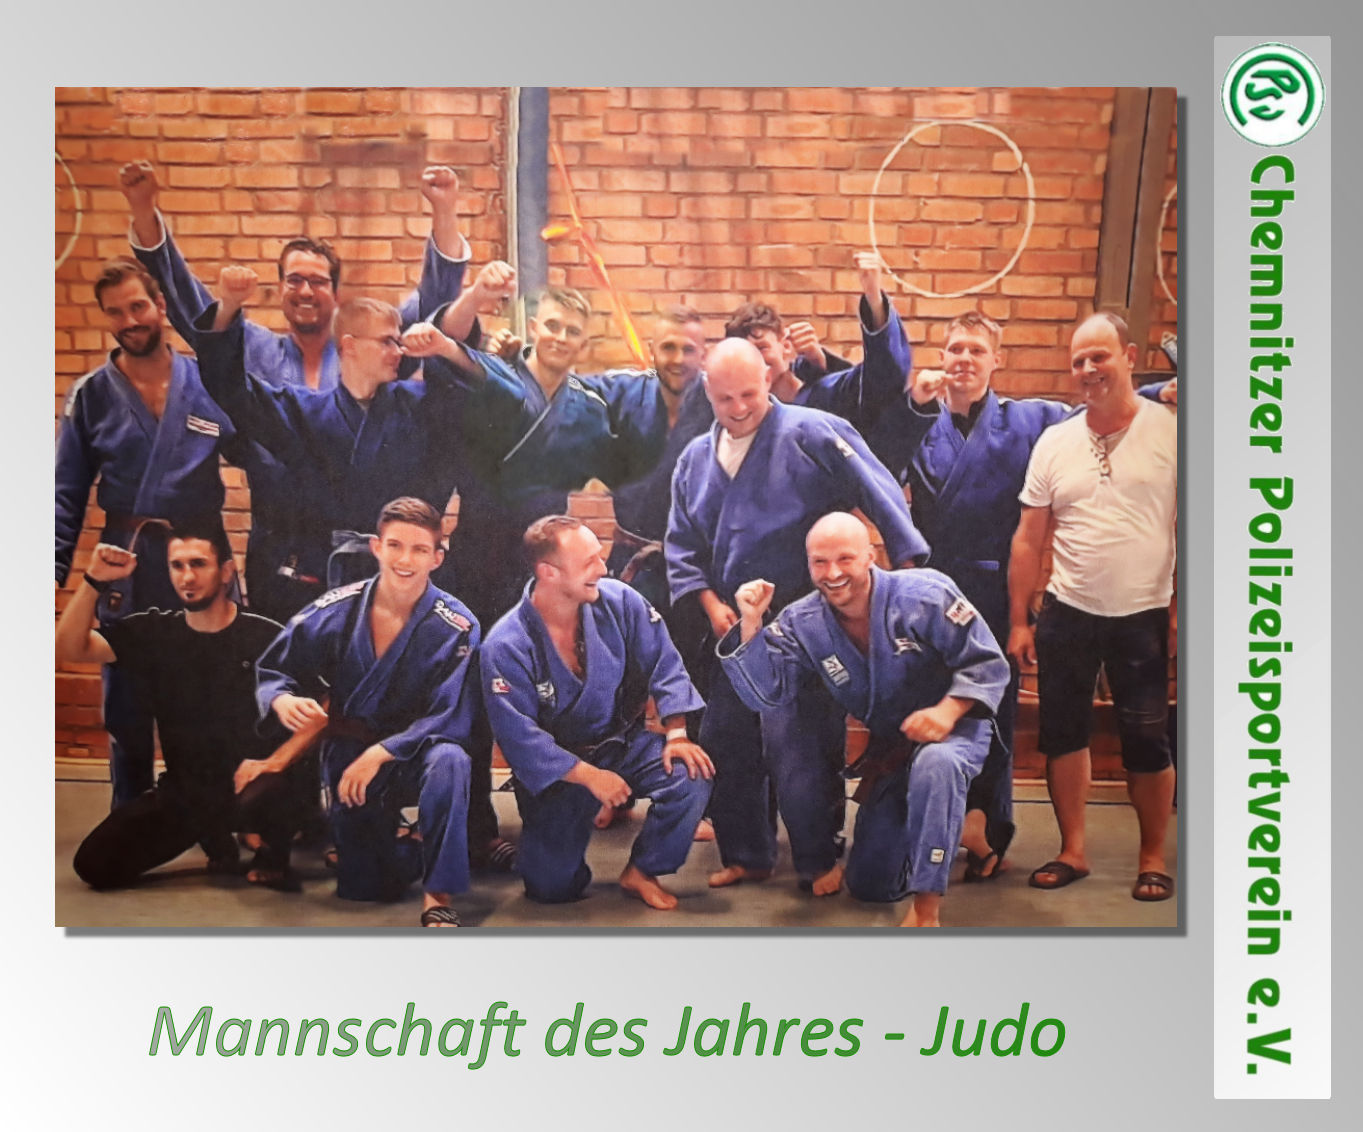 Mannschaft des Jahres 2022 - Judo